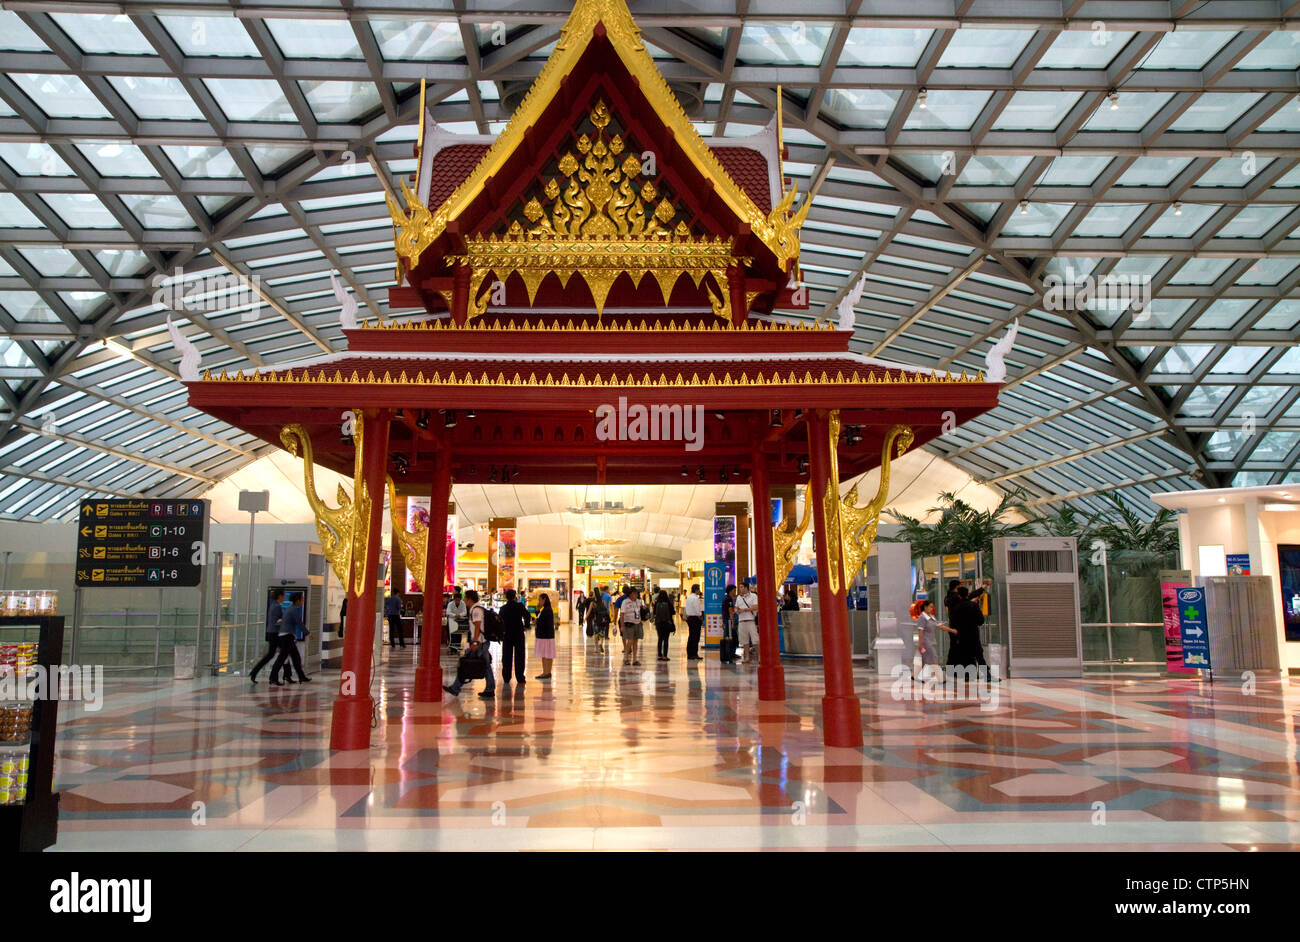 L'architecture thaï dans l'aérogare à l'aéroport de Suvarnabhumi ou le Nouvel Aéroport International de Bangkok à Bangkok, Thaïlande. Banque D'Images